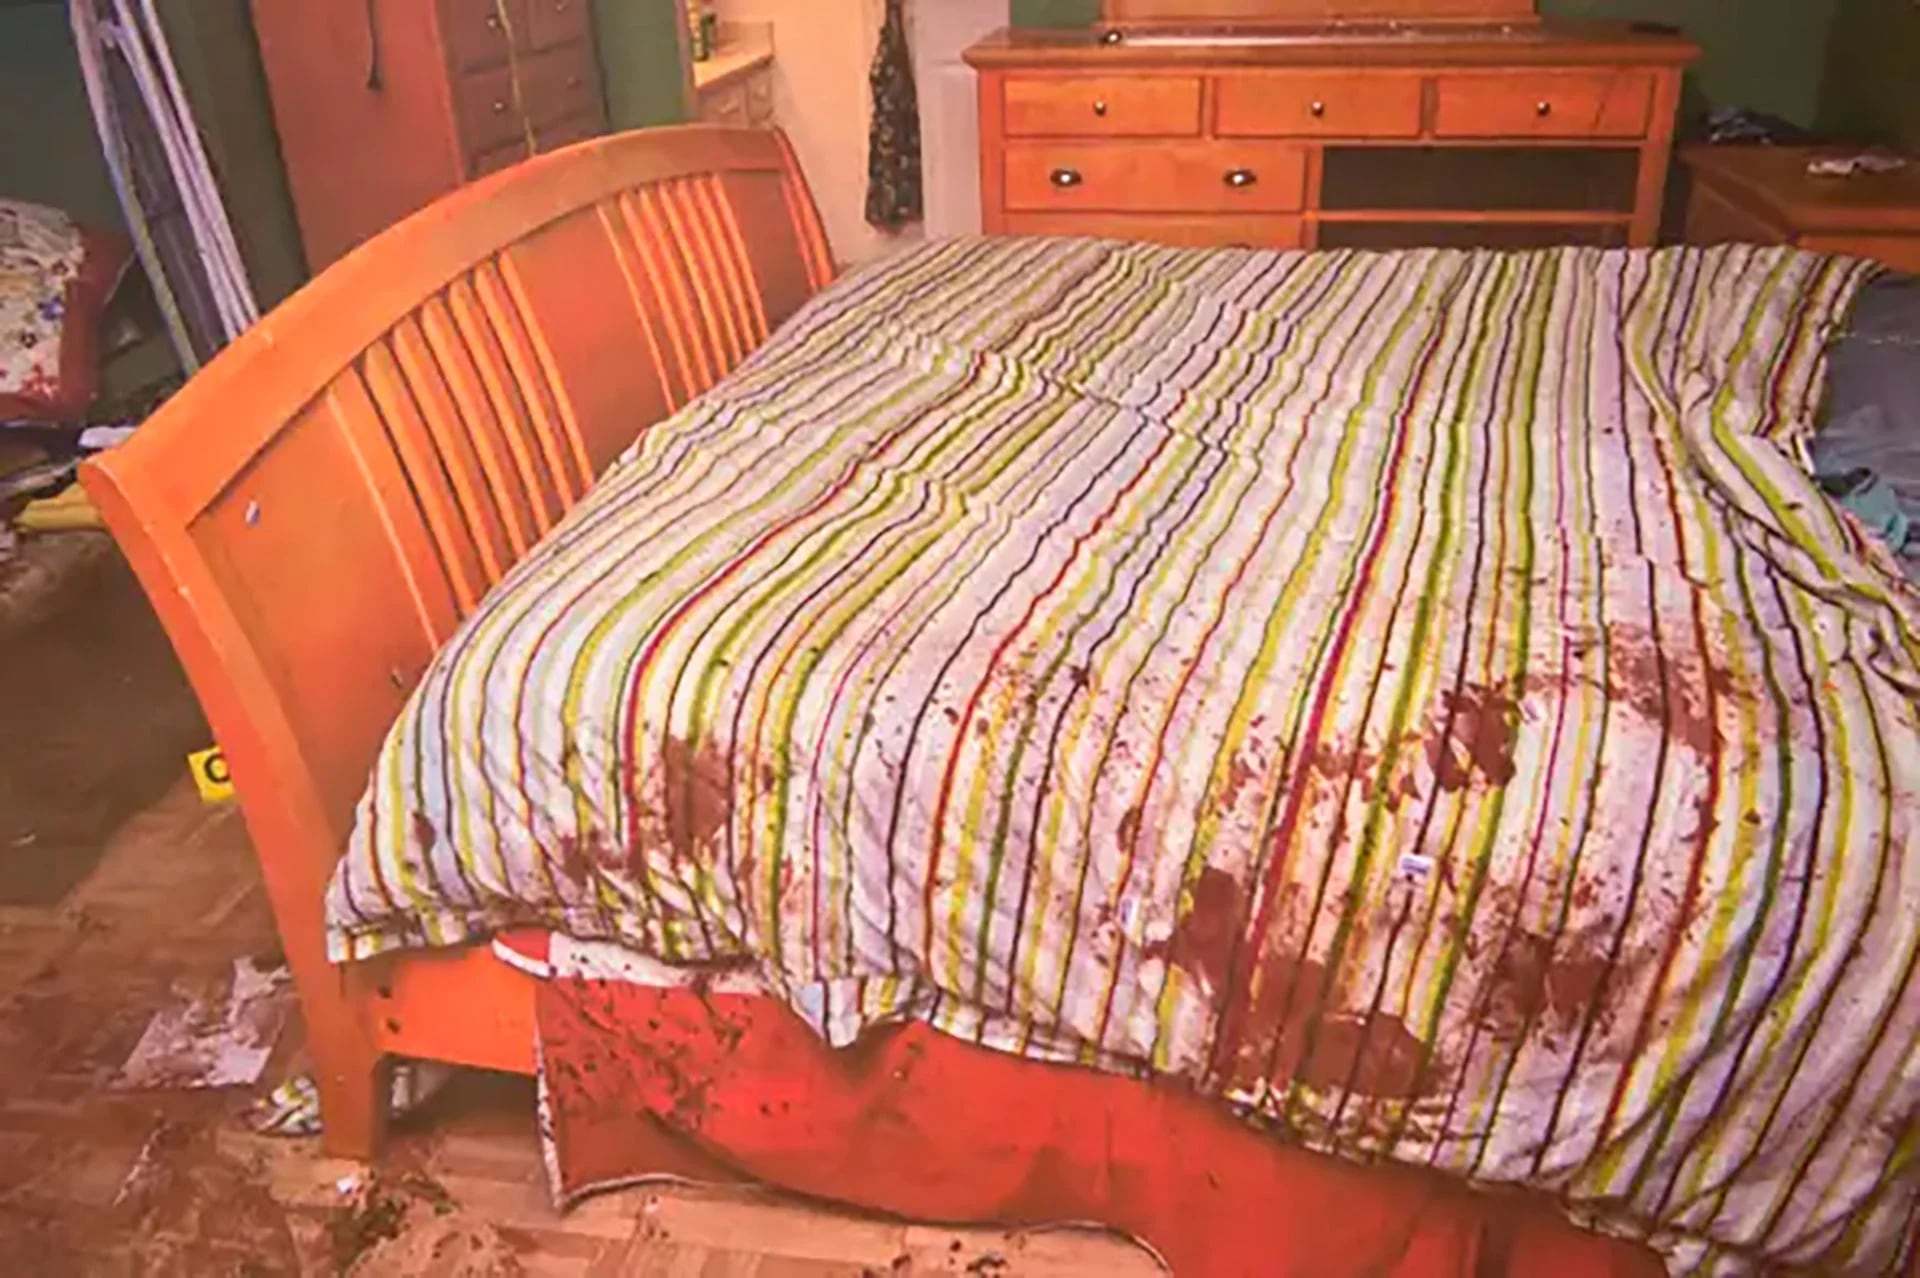 La cama ensangrentada en la cual Tyler puso los cuerpos de sus padres muertos